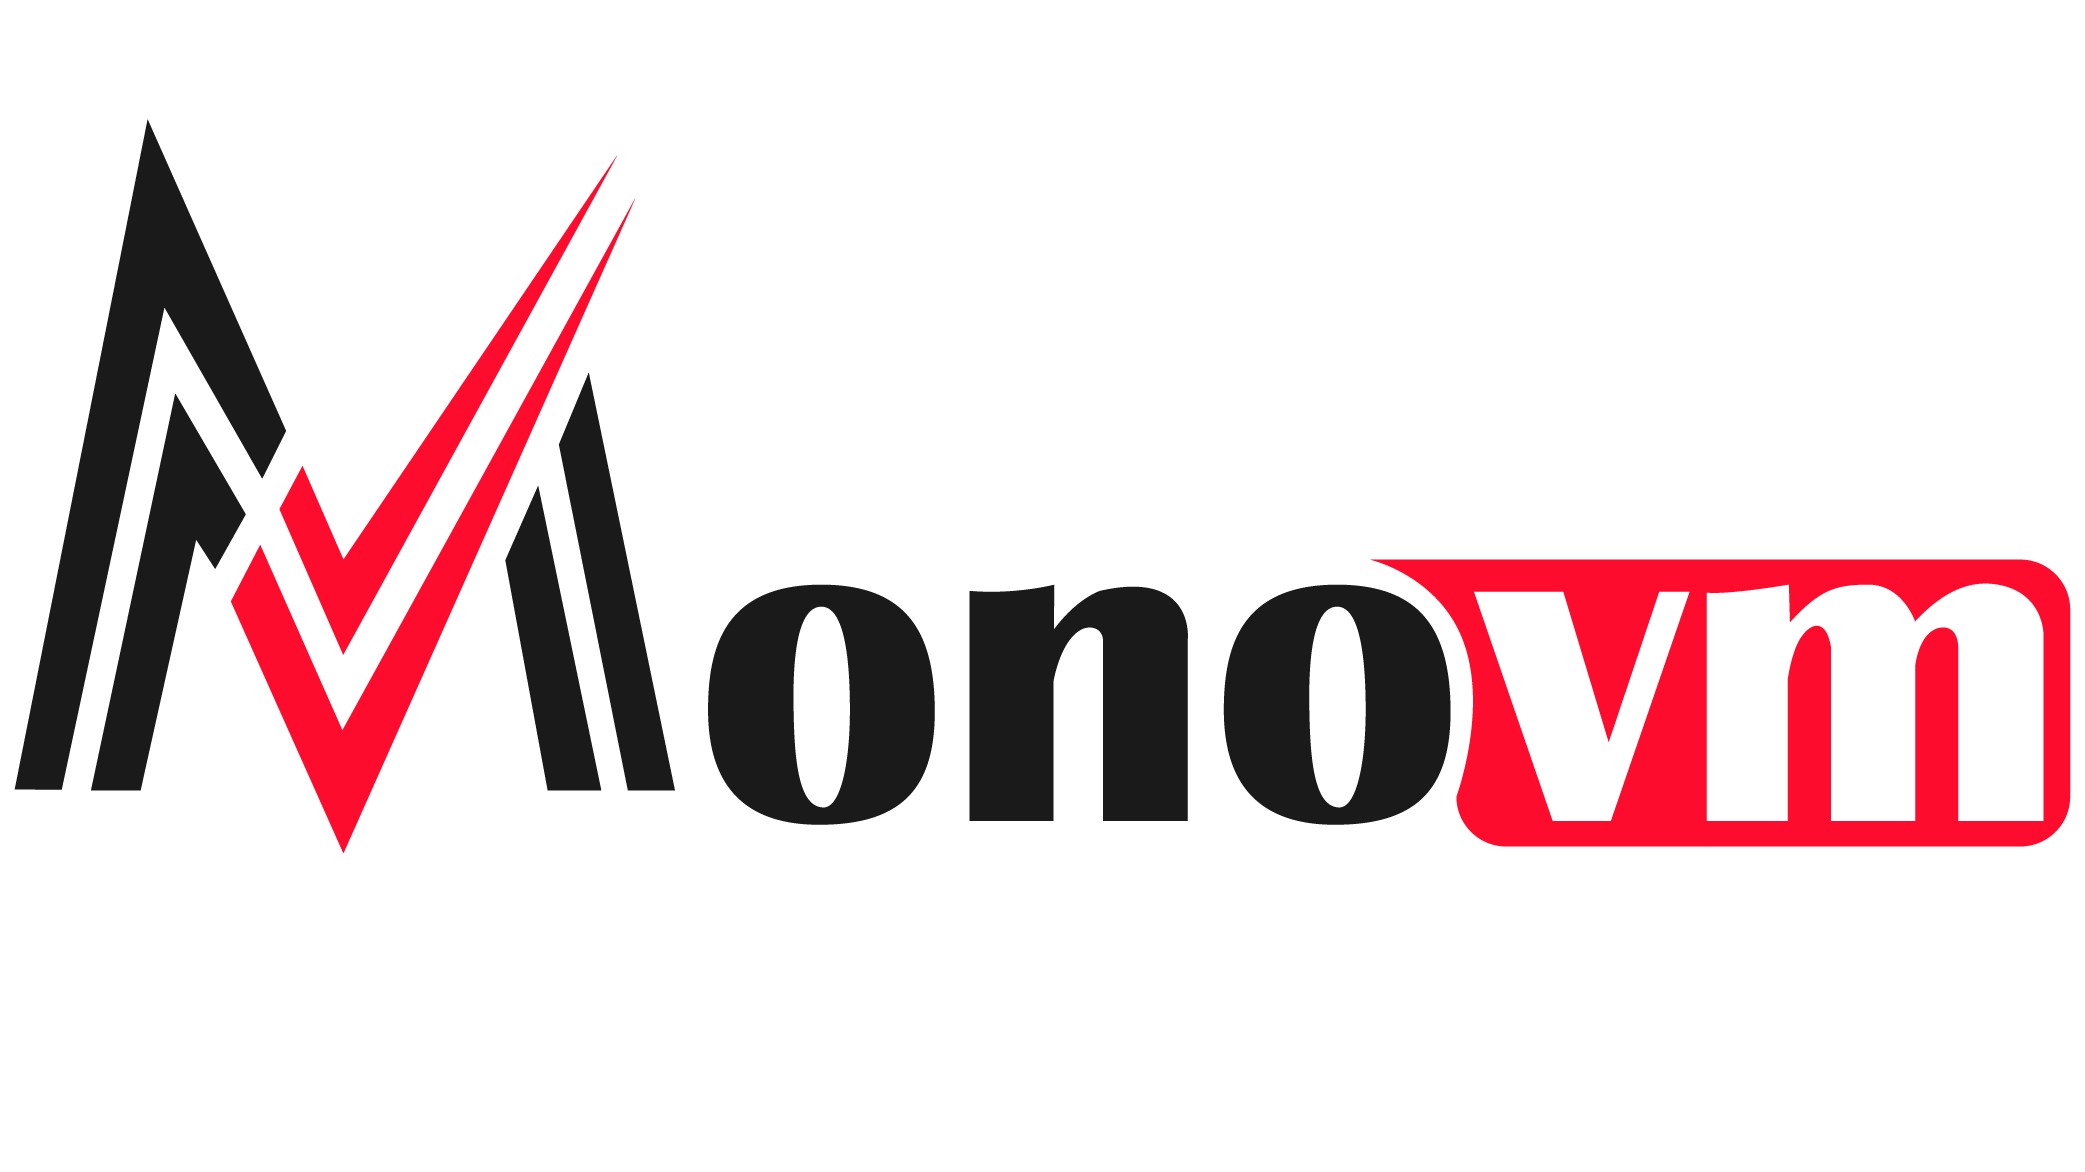 (c) Monovm.com